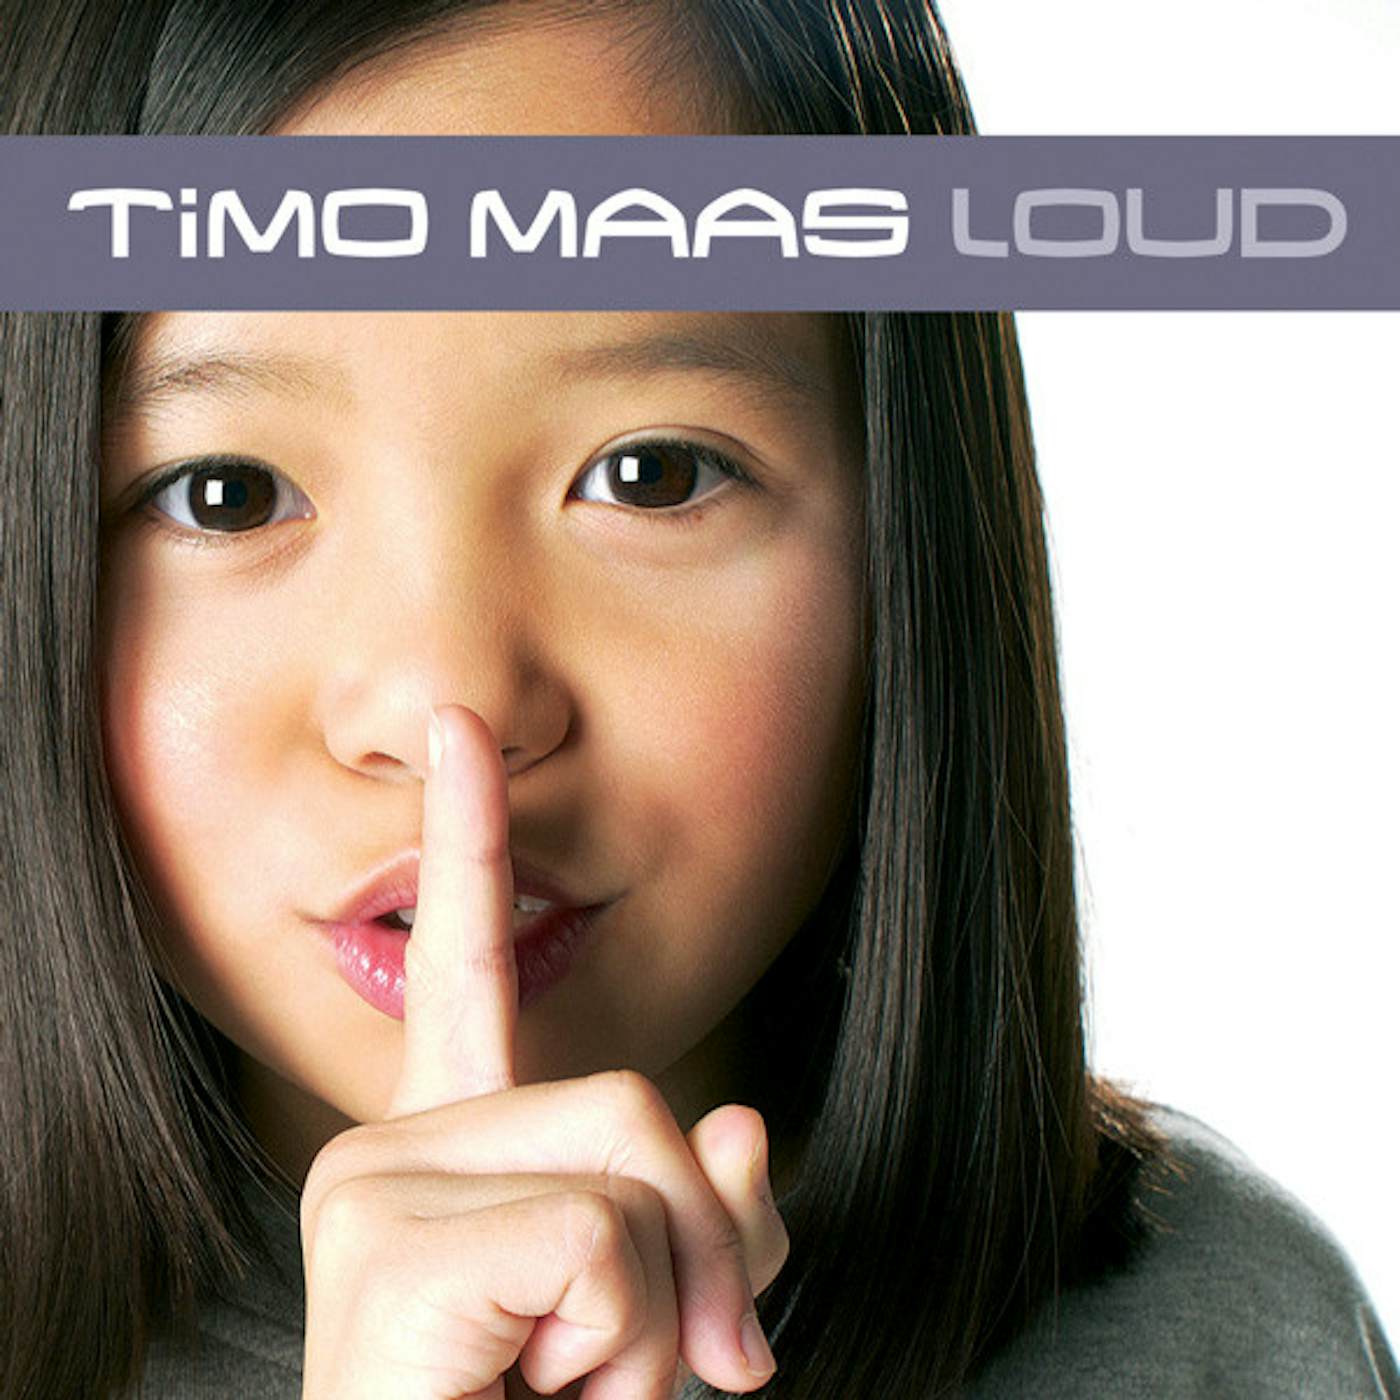 Timo Maas LOUD CD